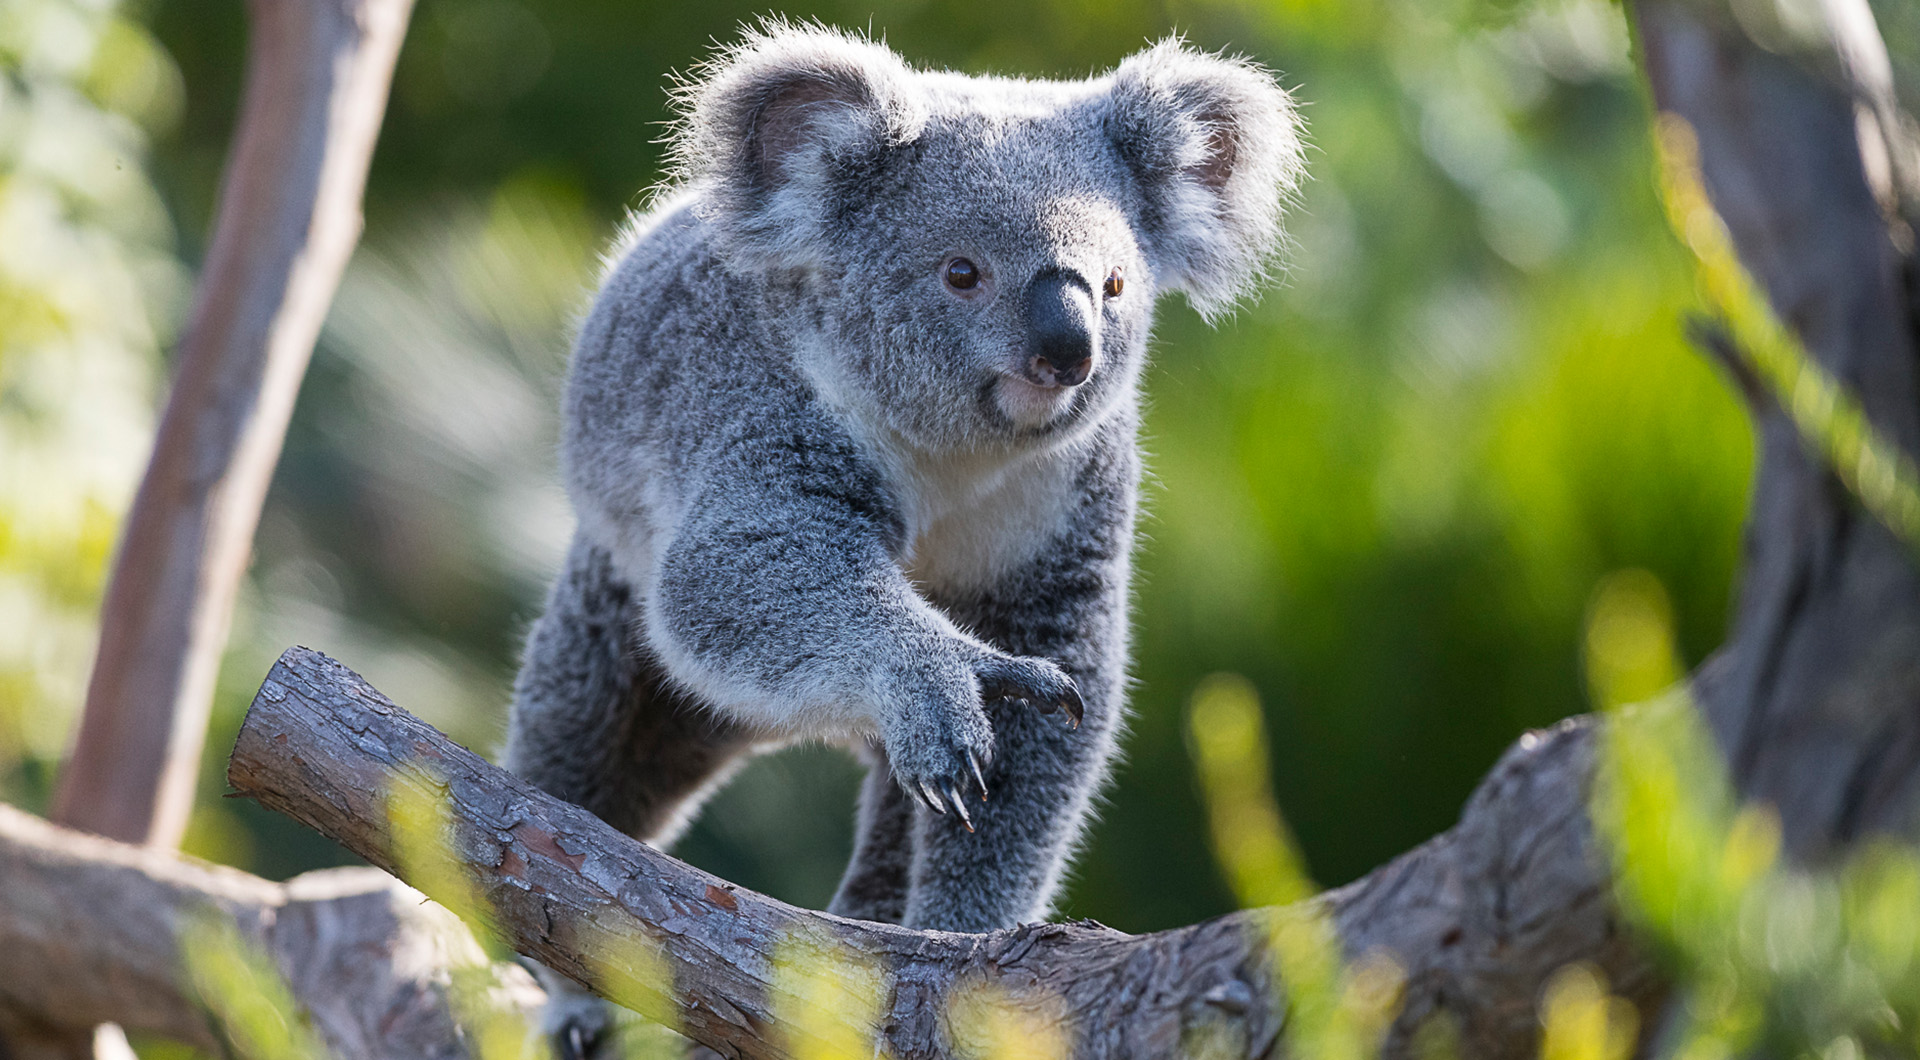 Image of a koala walking across a branch